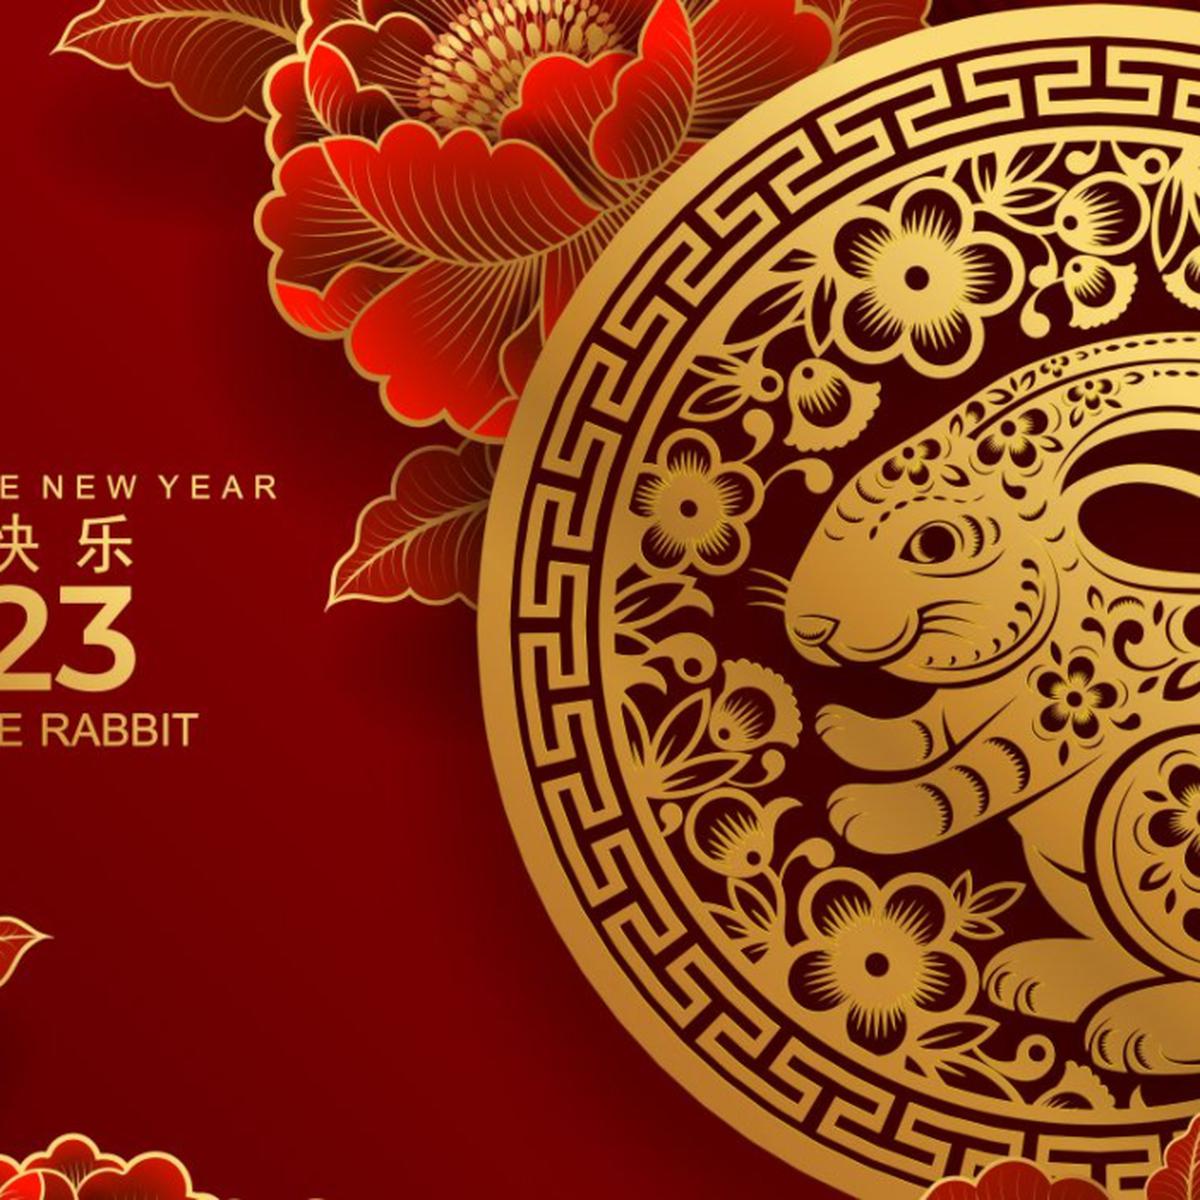 Horóscopo Chino 2023: ¿Qué animal te representa según tu año de nacimiento?, Horóscopo Chino, Año Nuevo Chino 2023, Astrología China, revtli, tdex, RESPUESTAS